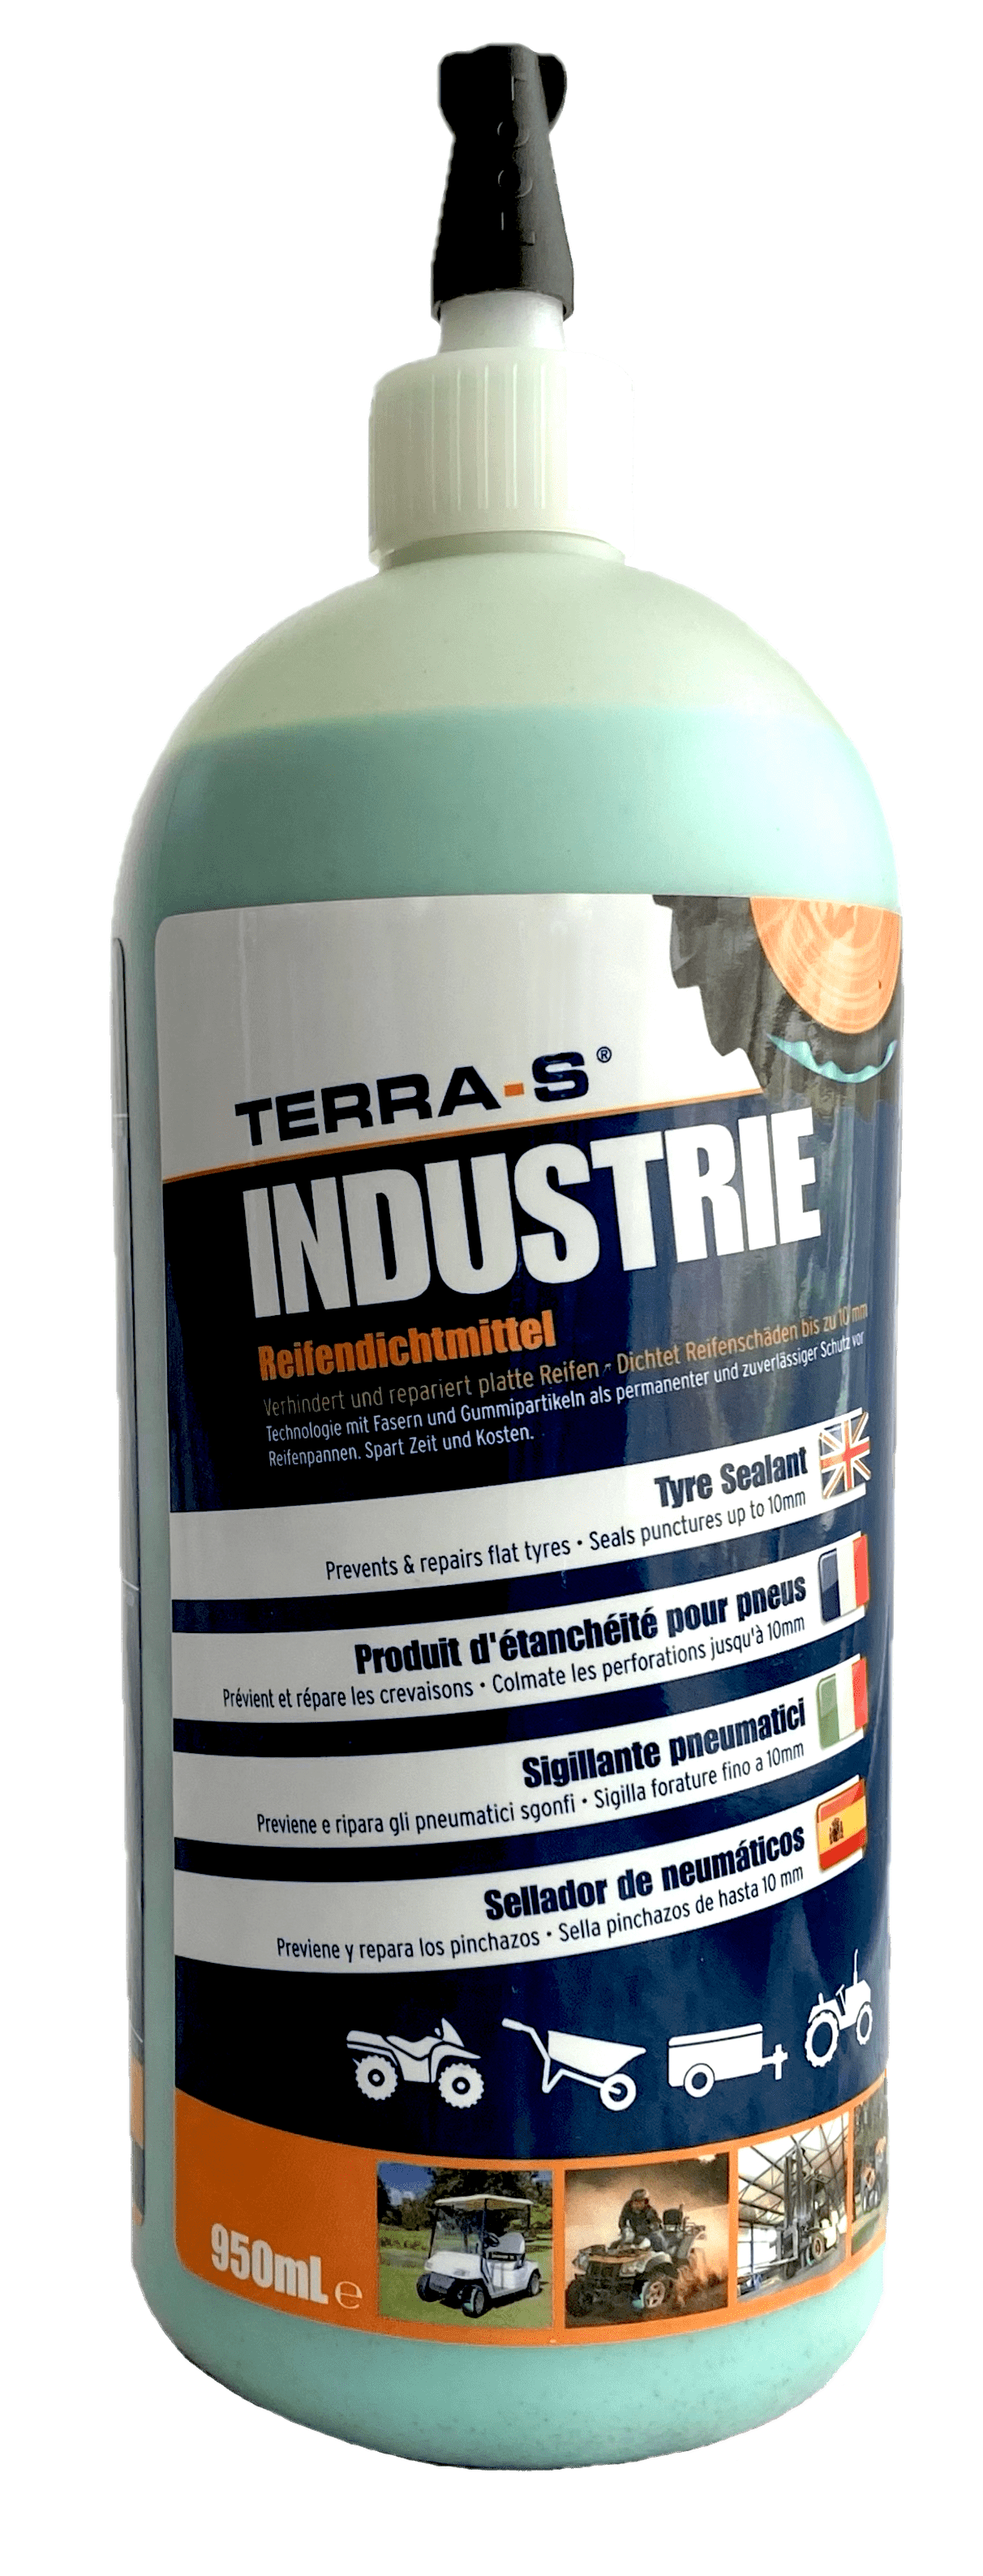 Produktlinie: Terra-S Reifendichtmittel